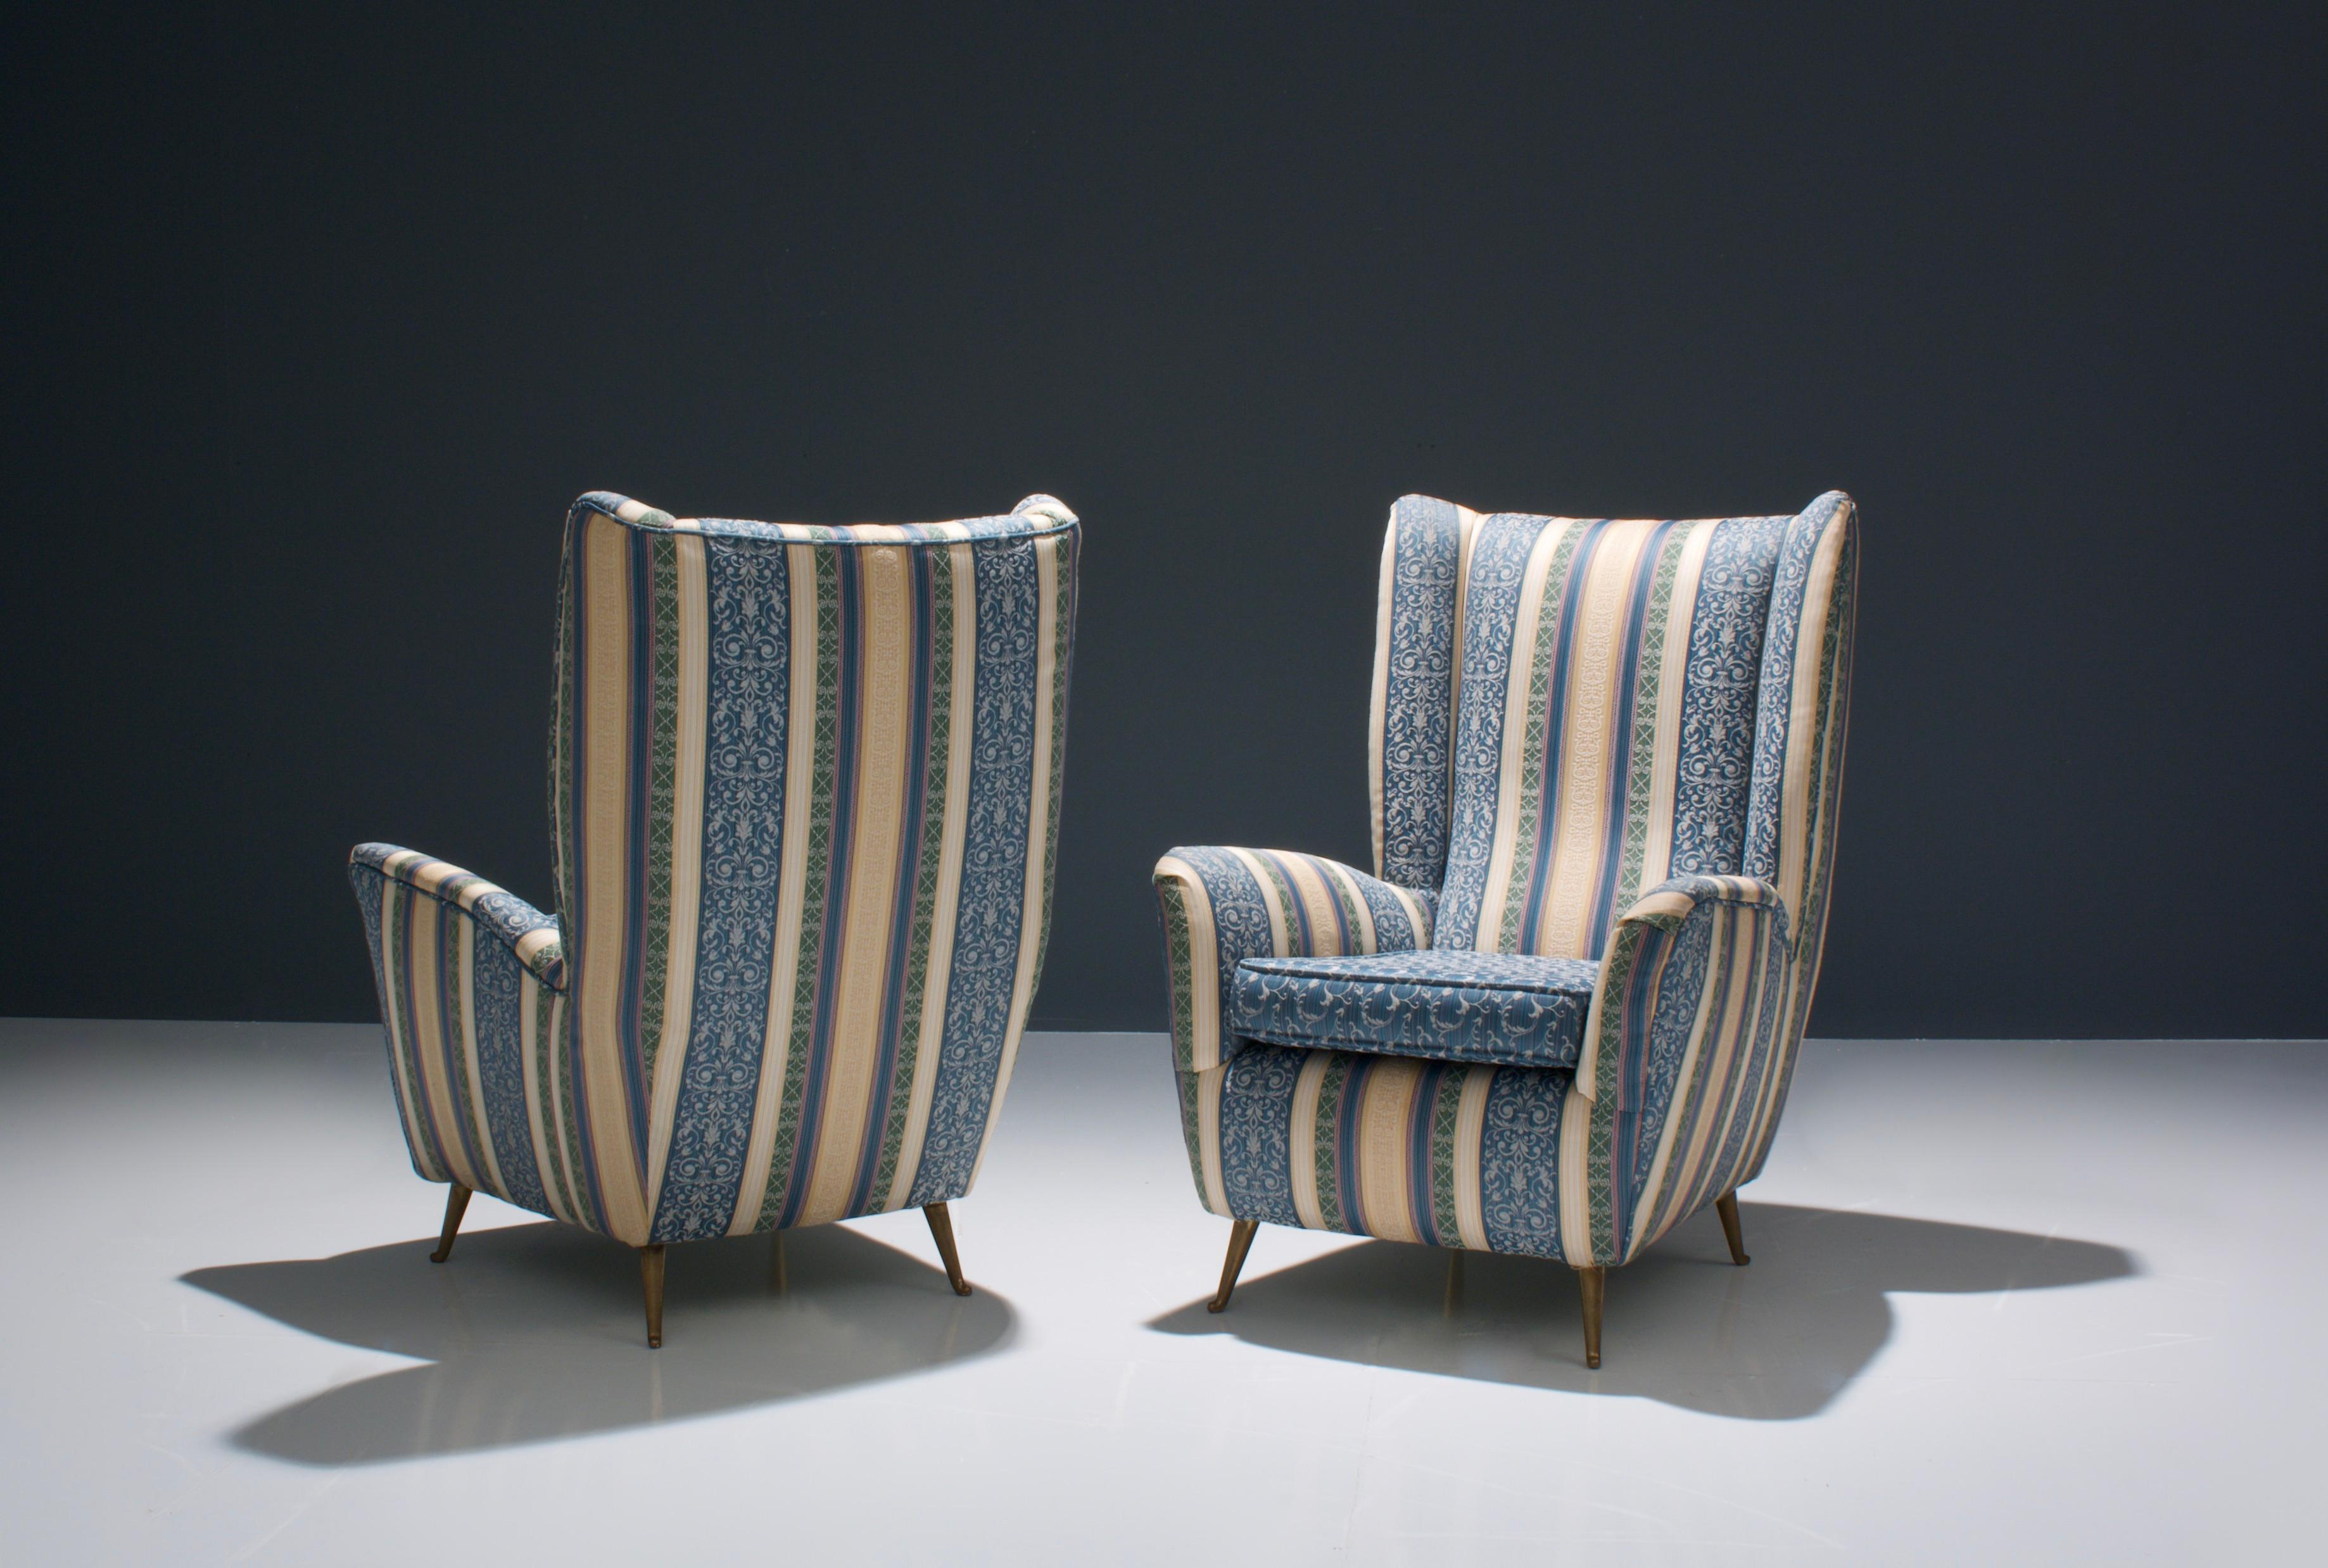 Ein Paar bequeme, warme und farbenfrohe italienische Loungesessel. Mit ihren runden Formen und den weichen, sauberen Kissen laden sie geradezu zum Sitzen und Entspannen ein. Sie werden sich von der Form des Stuhls umarmt fühlen, und das gibt ein